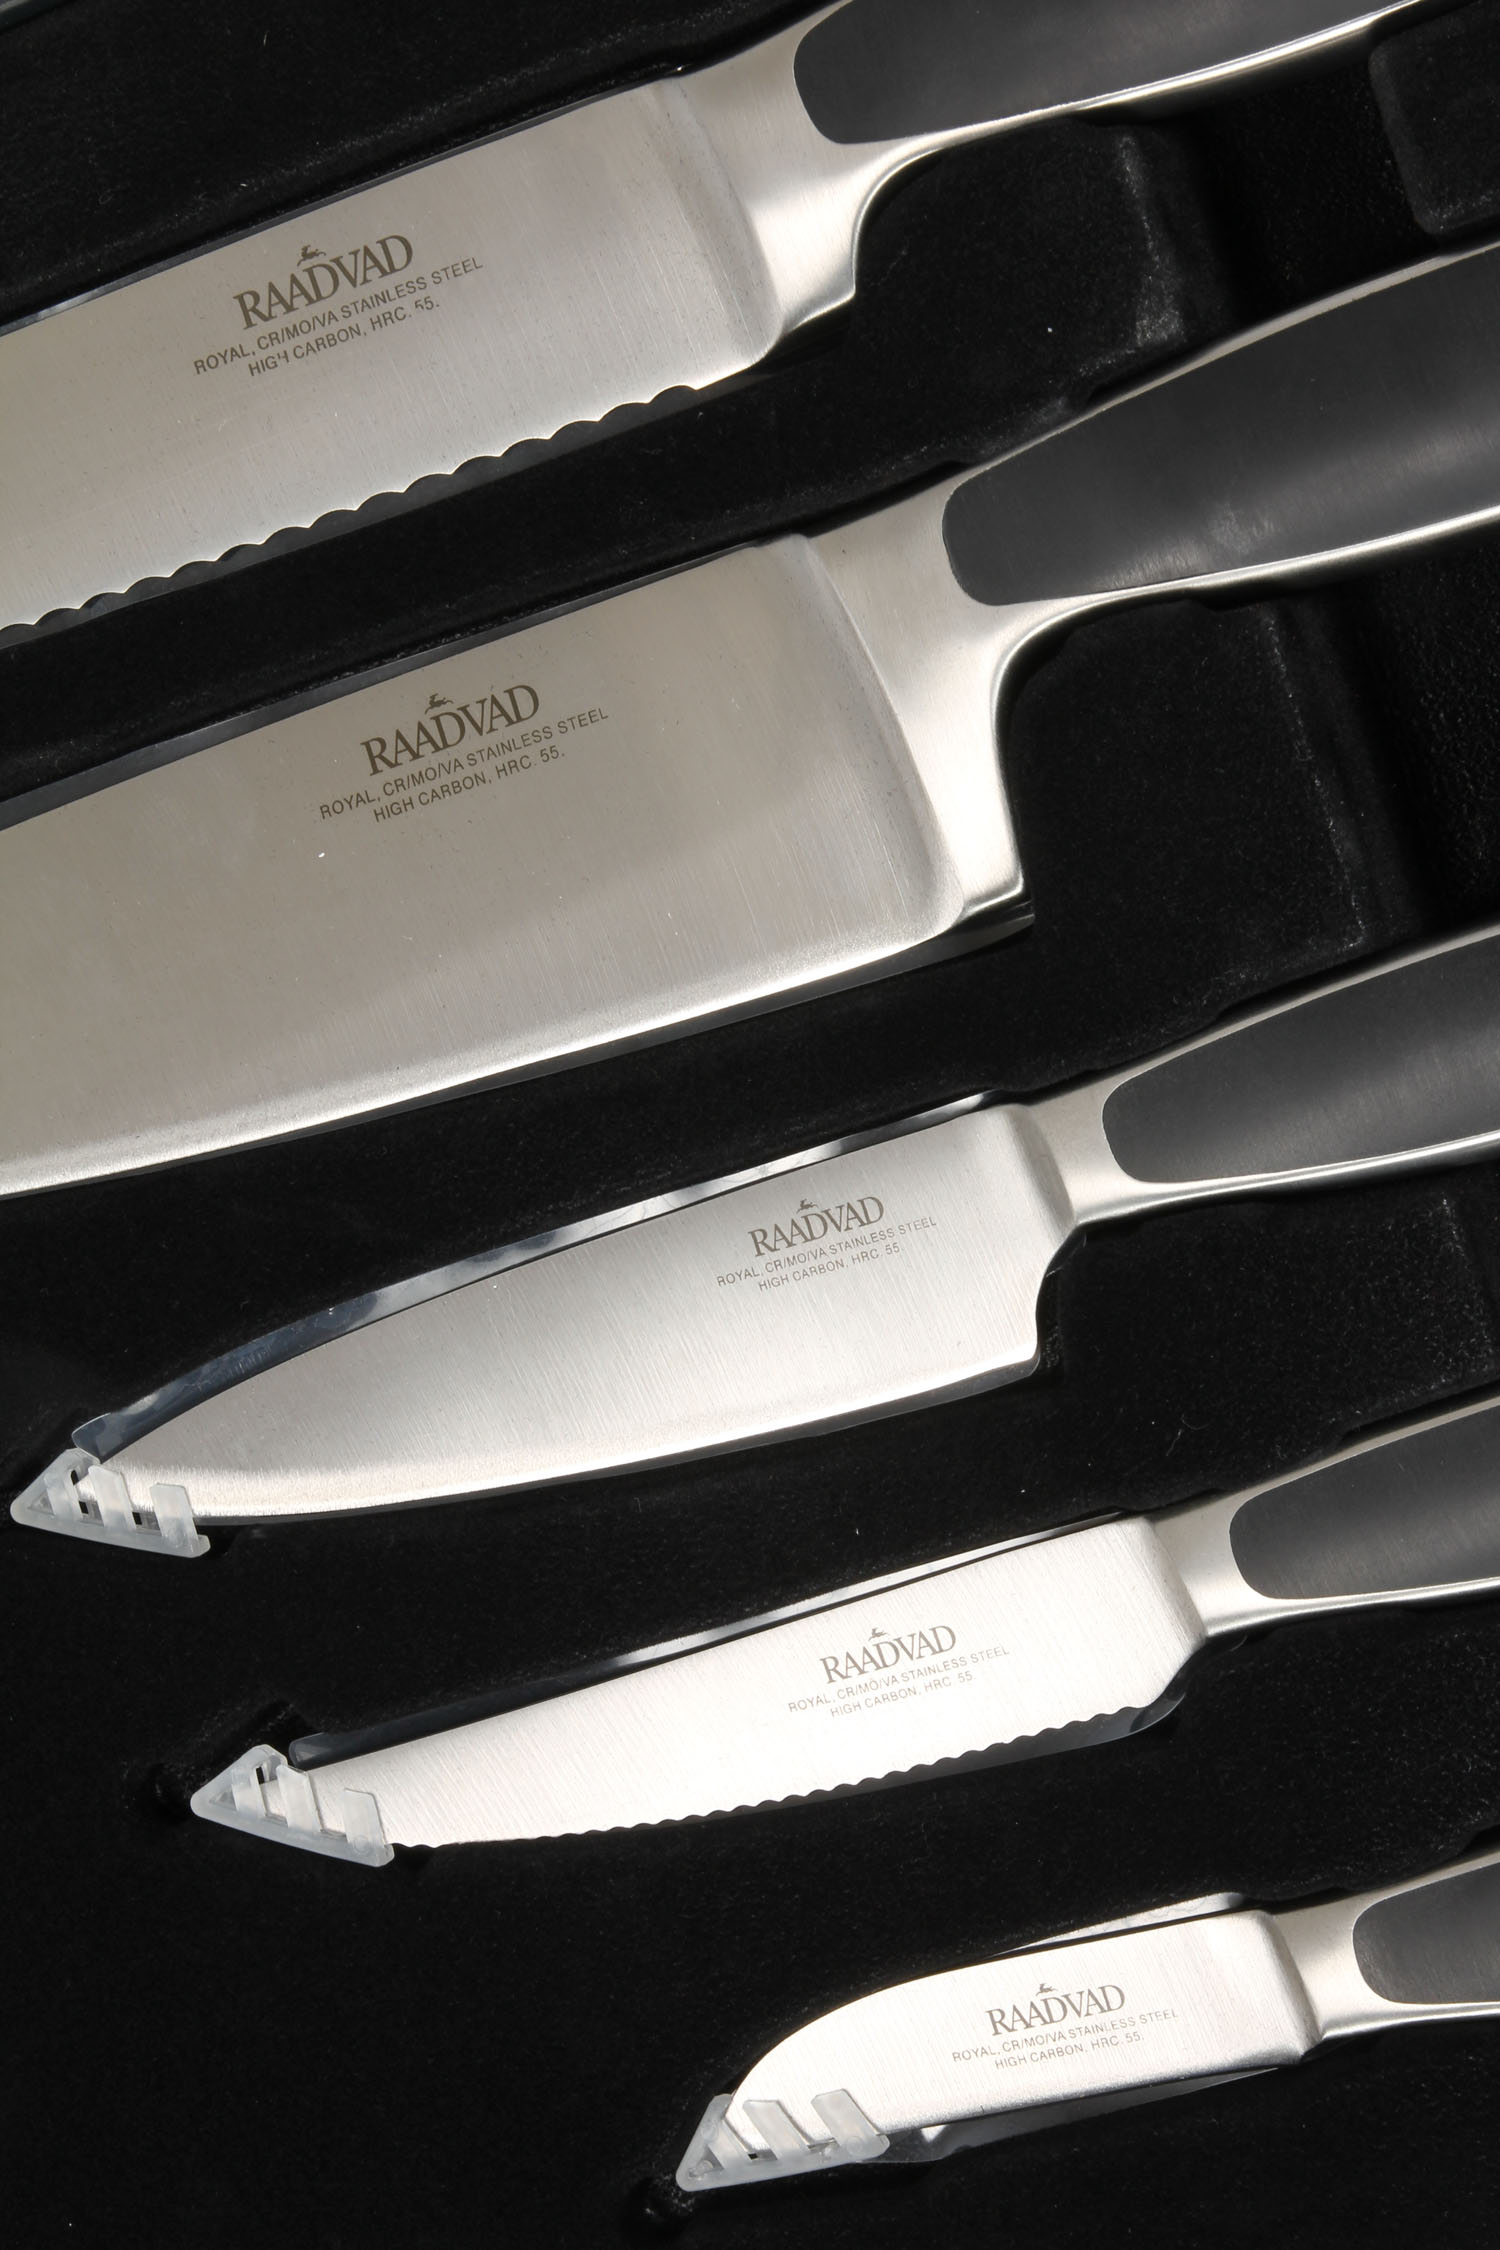 kæde tit gået i stykker Rådvad : Royal knivsæt samt Rådvad knivblok med flexindsats. | Lauritz.com